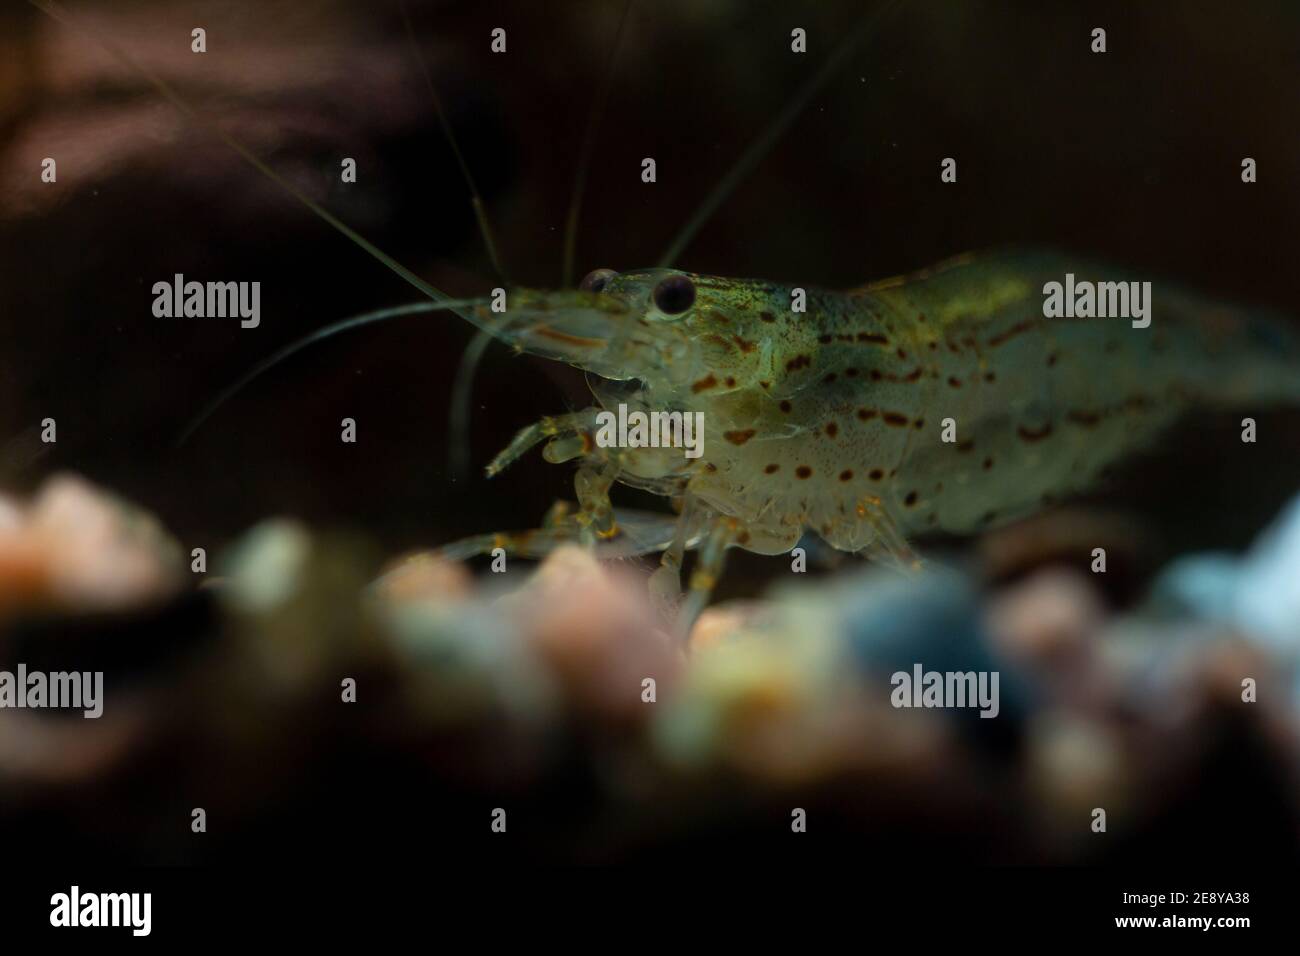 Amano shrimp in aquarium Stock Photo